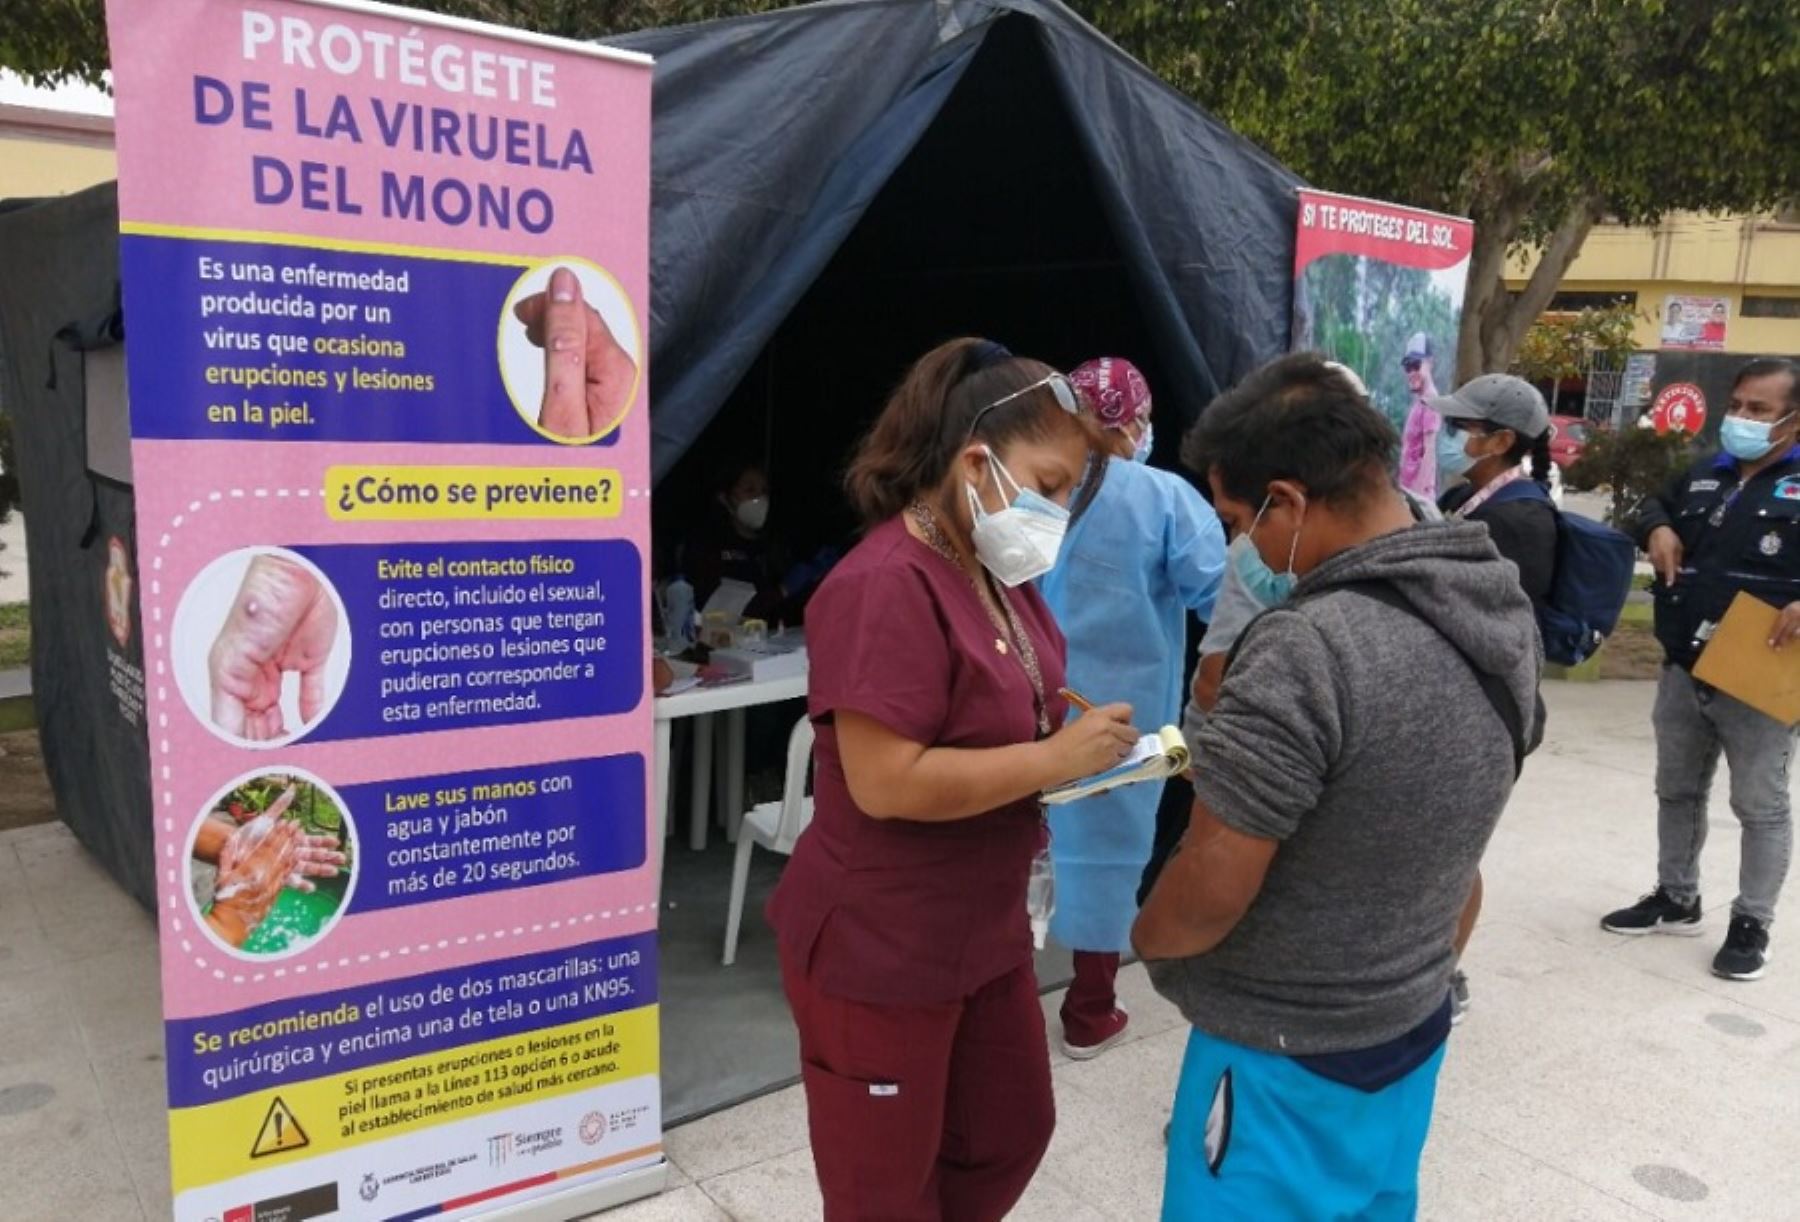 El Instituto Nacional de Salud confirmó dos casos positivos para viruela del mono en Lambayeque, con lo cual suman tres contagios de esta enfermedad en la región, informó la Gerencia Regional de Salud